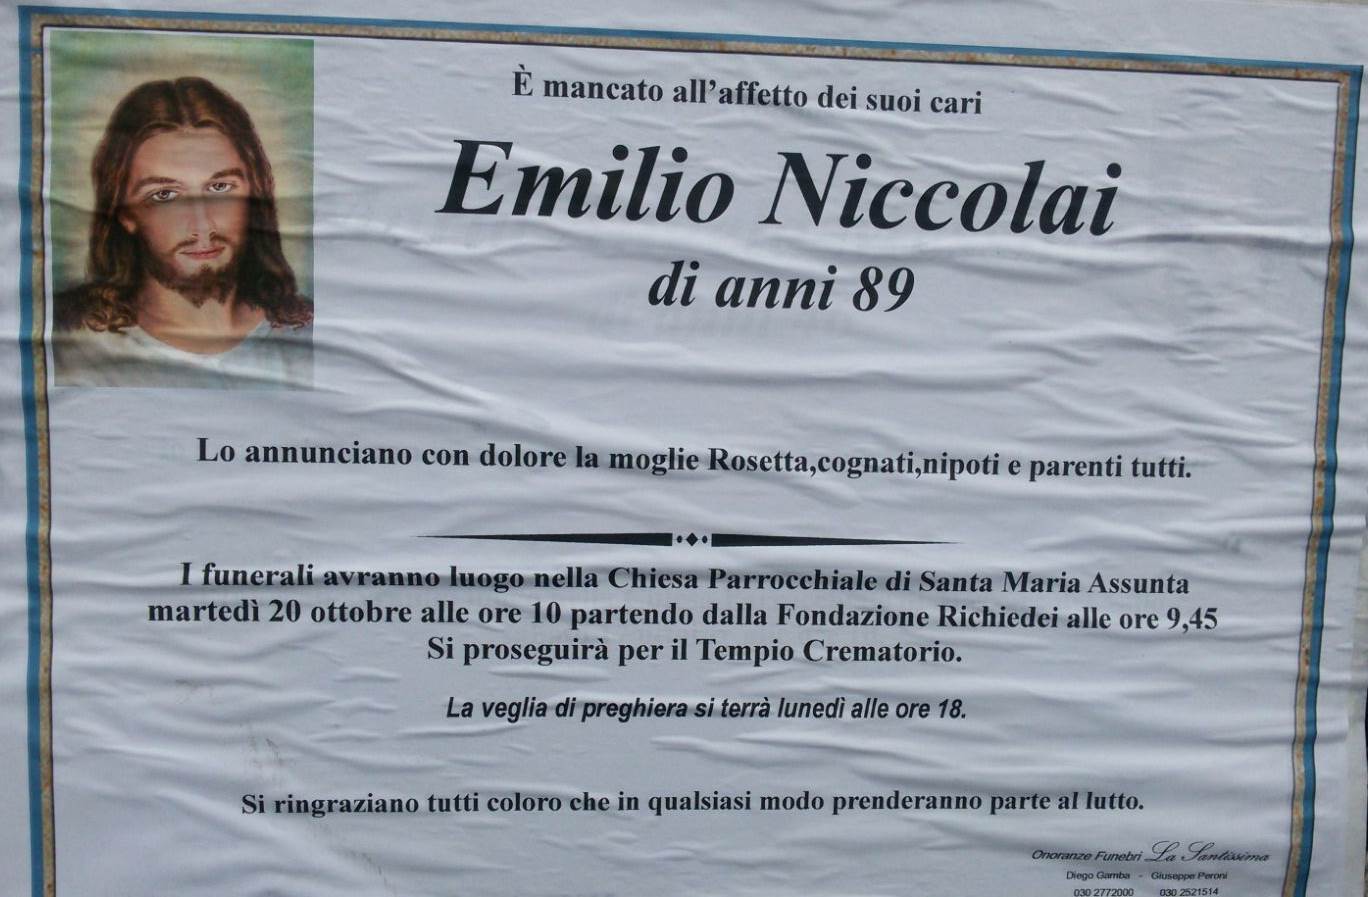 Necrologio Emilio Niccolai 2015